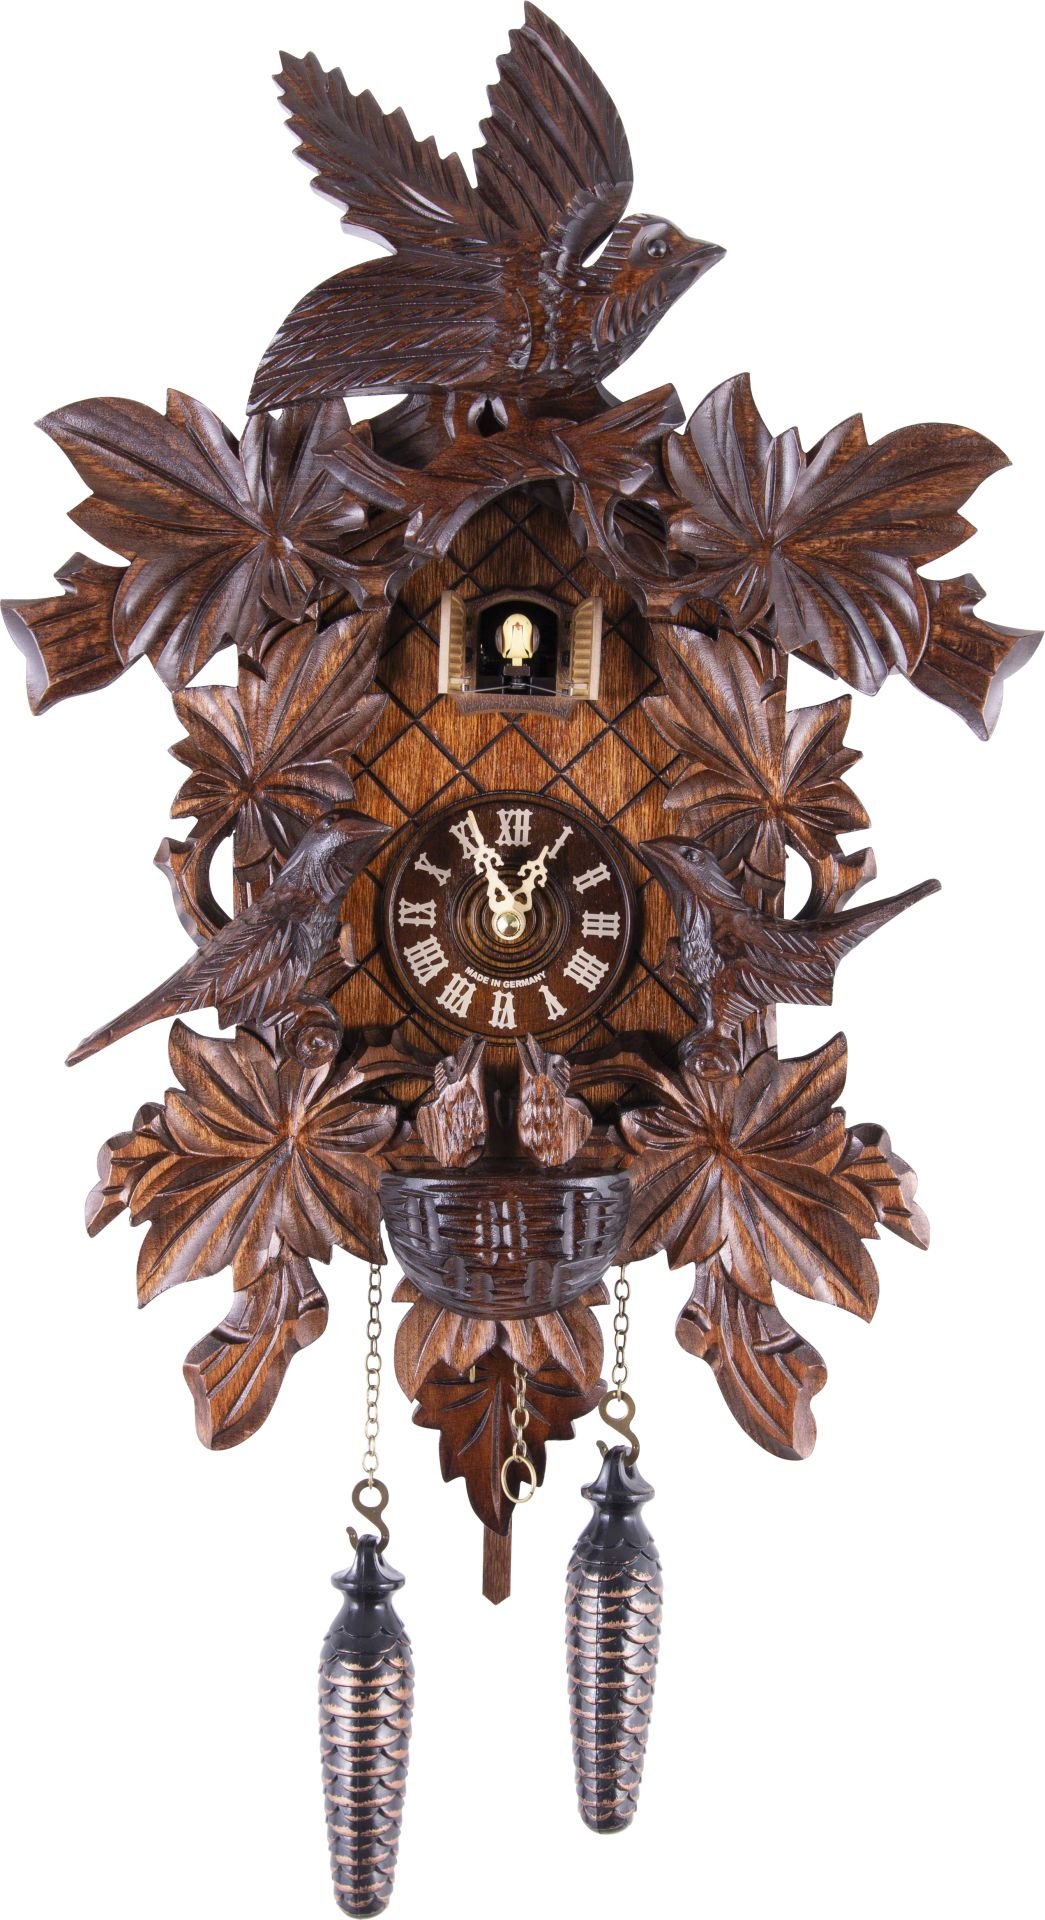 Kuckucksuhr geschnitzt Quarz-Uhrwerk 46cm von Trenkle Uhren